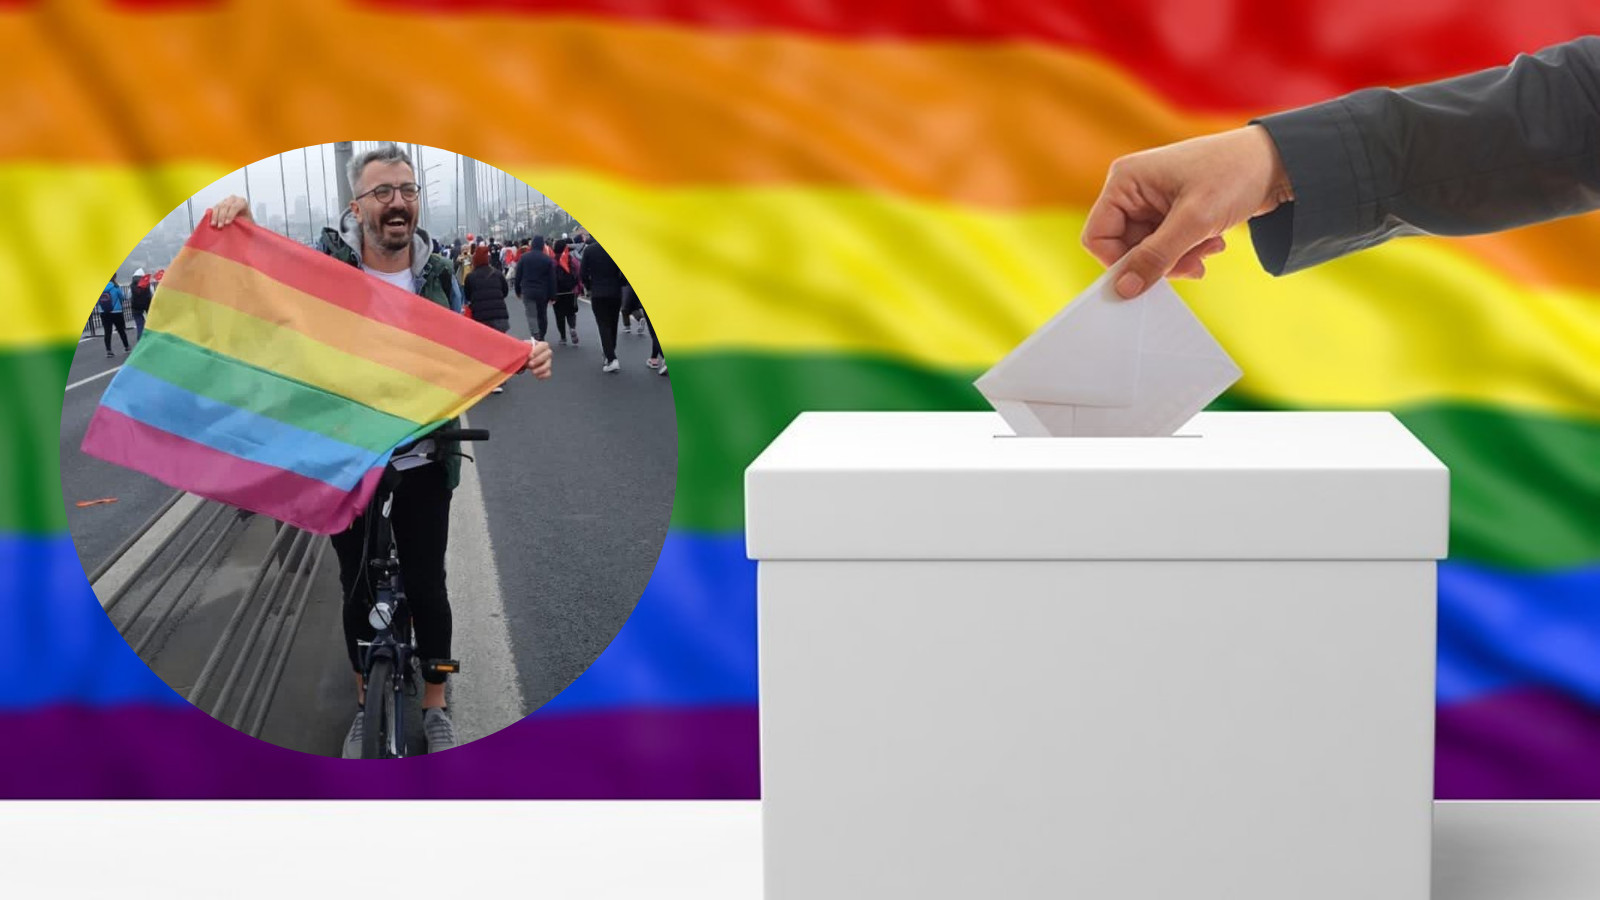 “Seçim atmosferi LGBTİ+’lar için güvenlik meselesini hayatileştirdi” Kaos GL - LGBTİ+ Haber Portalı